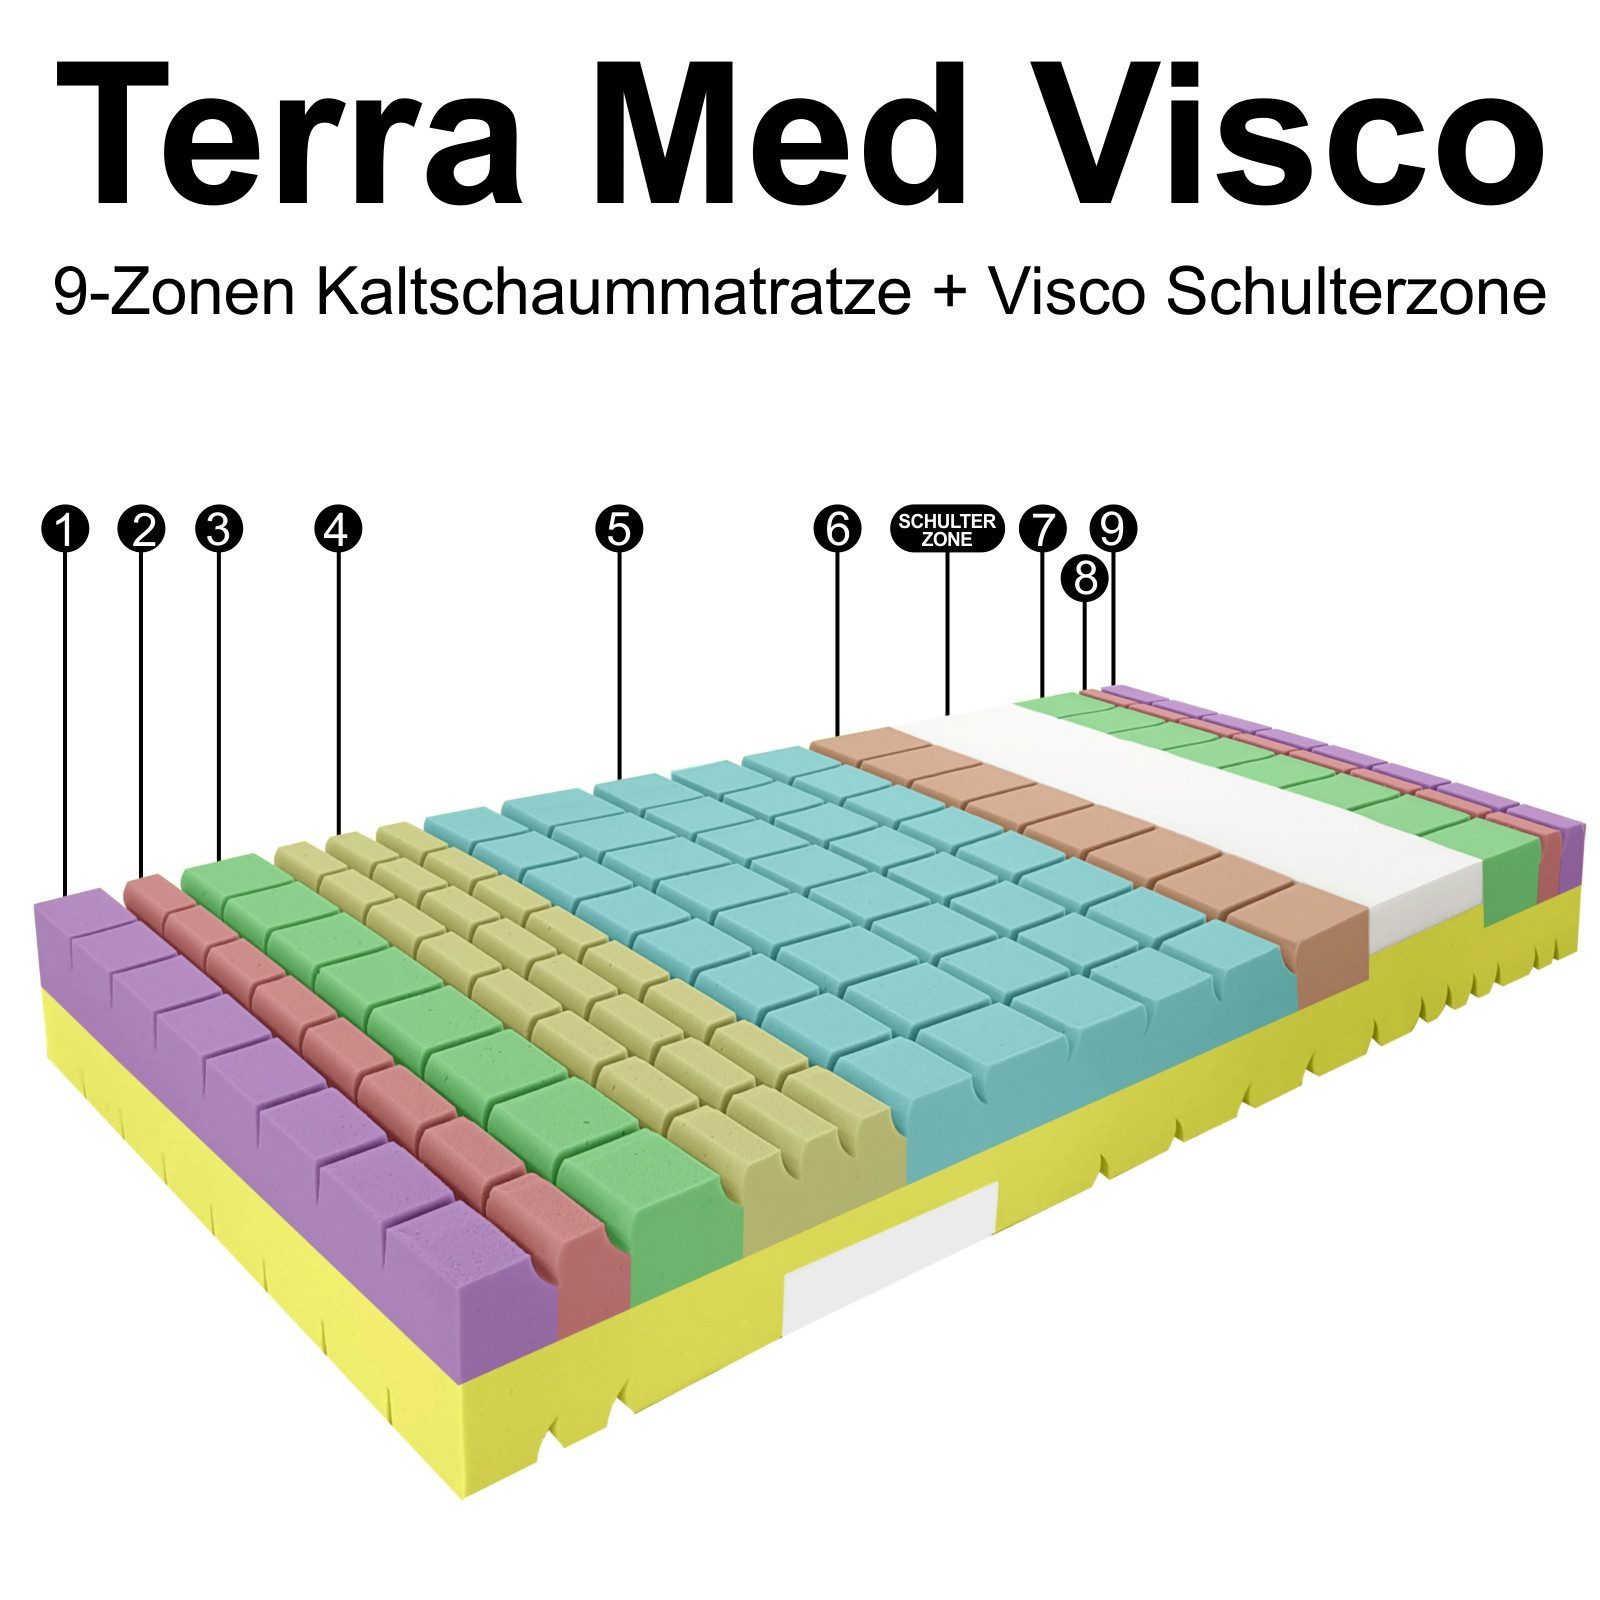 Kaltschaummatratze Kaltschaummatratze TERRAMED VISCO mit Visco-Schulterzone, Matratzen Perfekt, 24 cm hoch, hohes Raumgewicht und Visco - Schulterzone